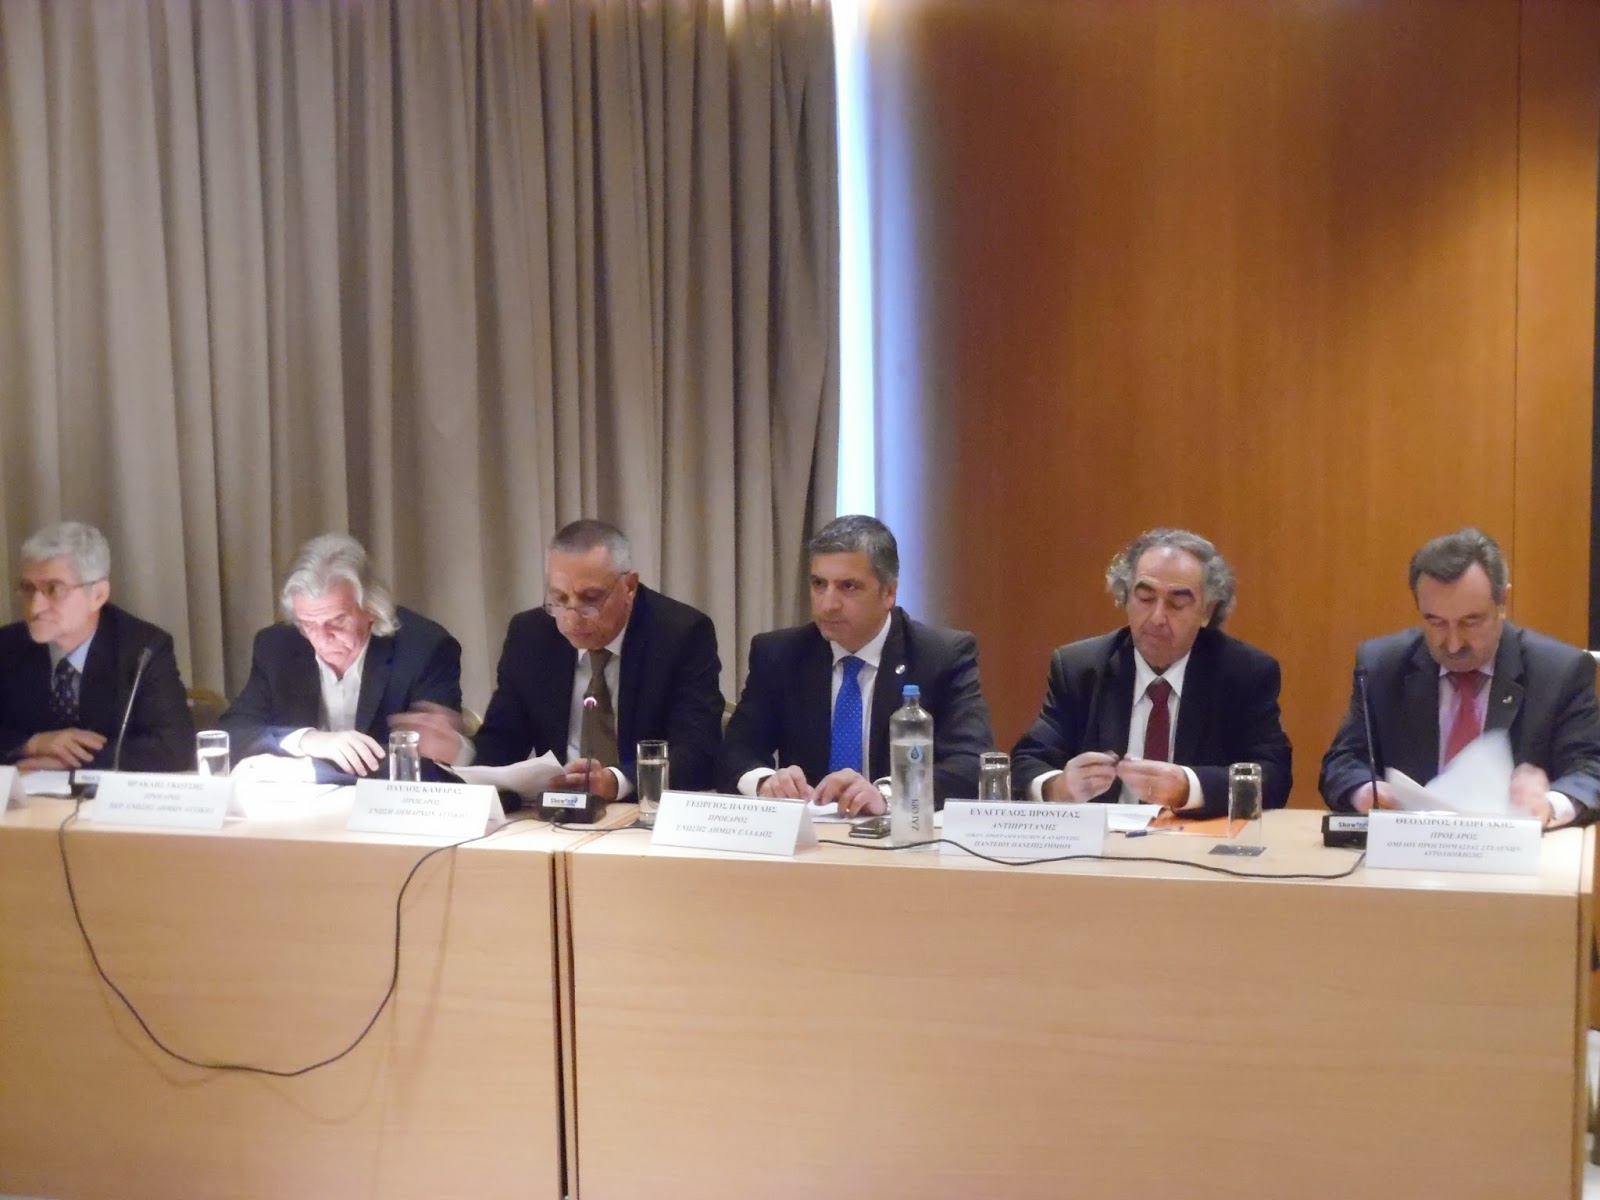 Συμμετοχή του προέδρου της ΚΕΔΕ Γ. Πατούλη στο συνέδριο για τη συνταγματική αναθεώρηση με σκοπό την αναβάθμιση της αυτοδιοίκησης - Φωτογραφία 2